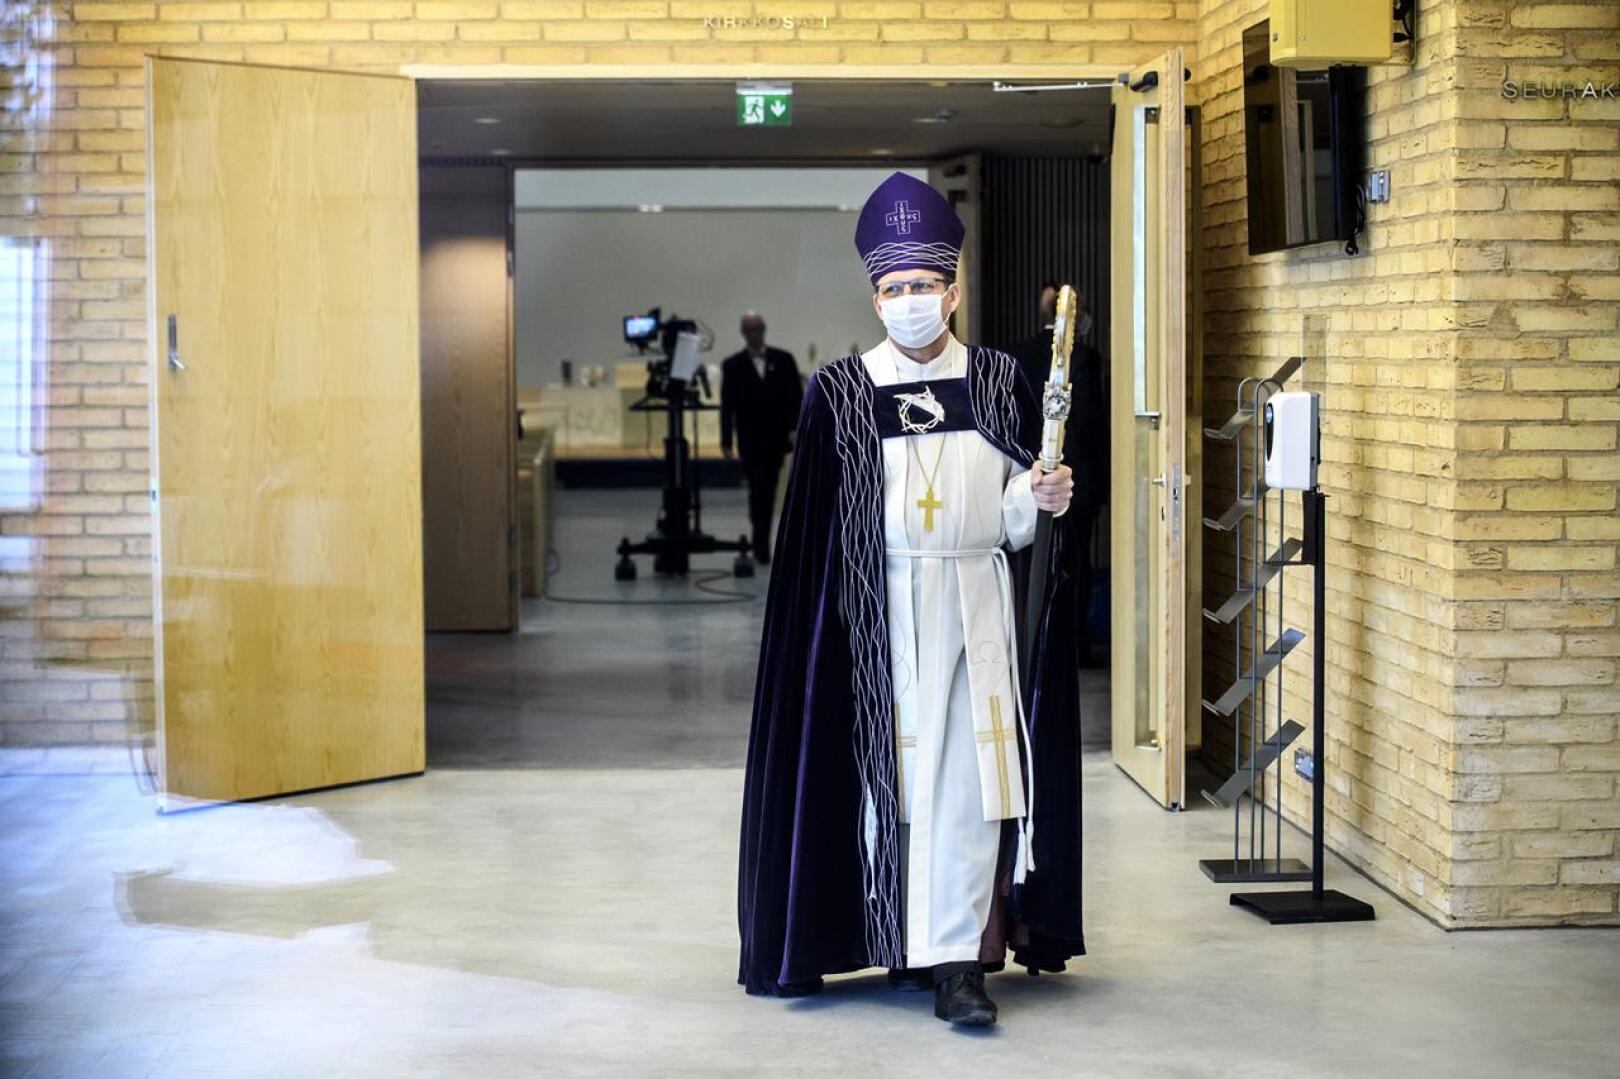 Oulun hiippakunnan piispa Jukka Keskitalo oli toimittamassa Ylivieskan uuden kirkon vihkiäismessua pääsiäissunnuntaina.